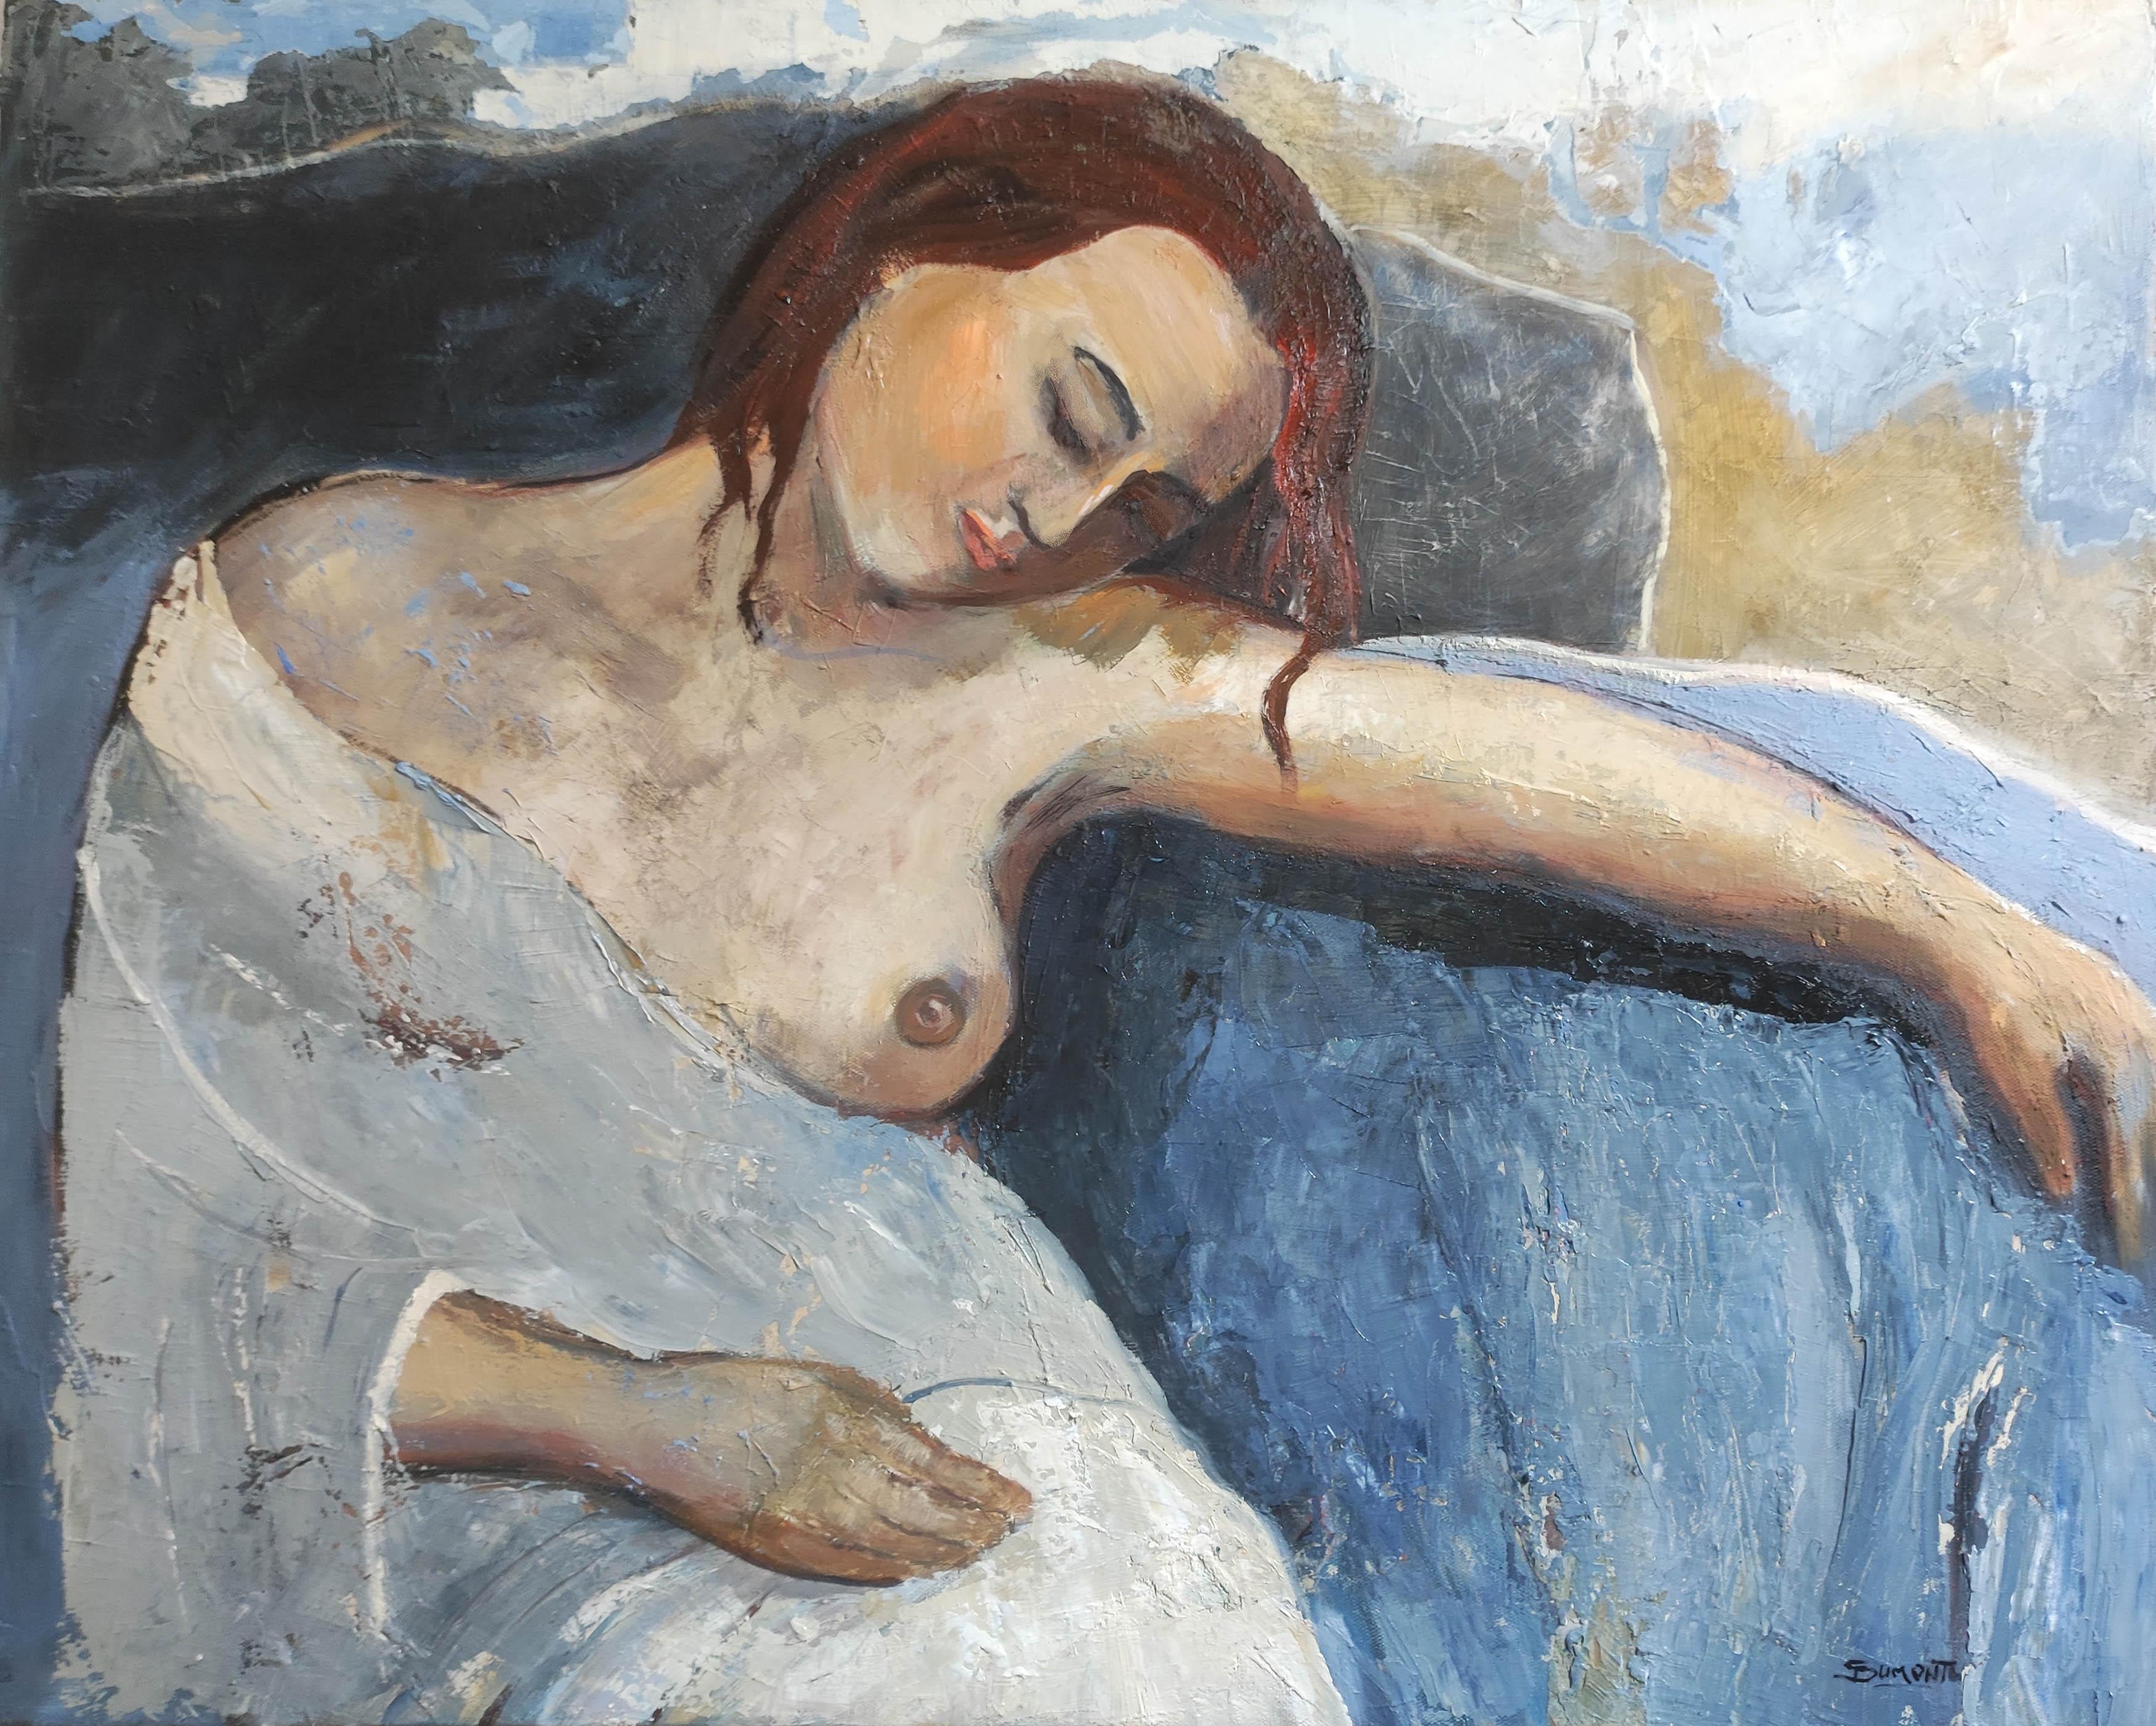 Femme nue bleue, huile sur toile, peinture figurative, contemporaine - Painting de SOPHIE DUMONT